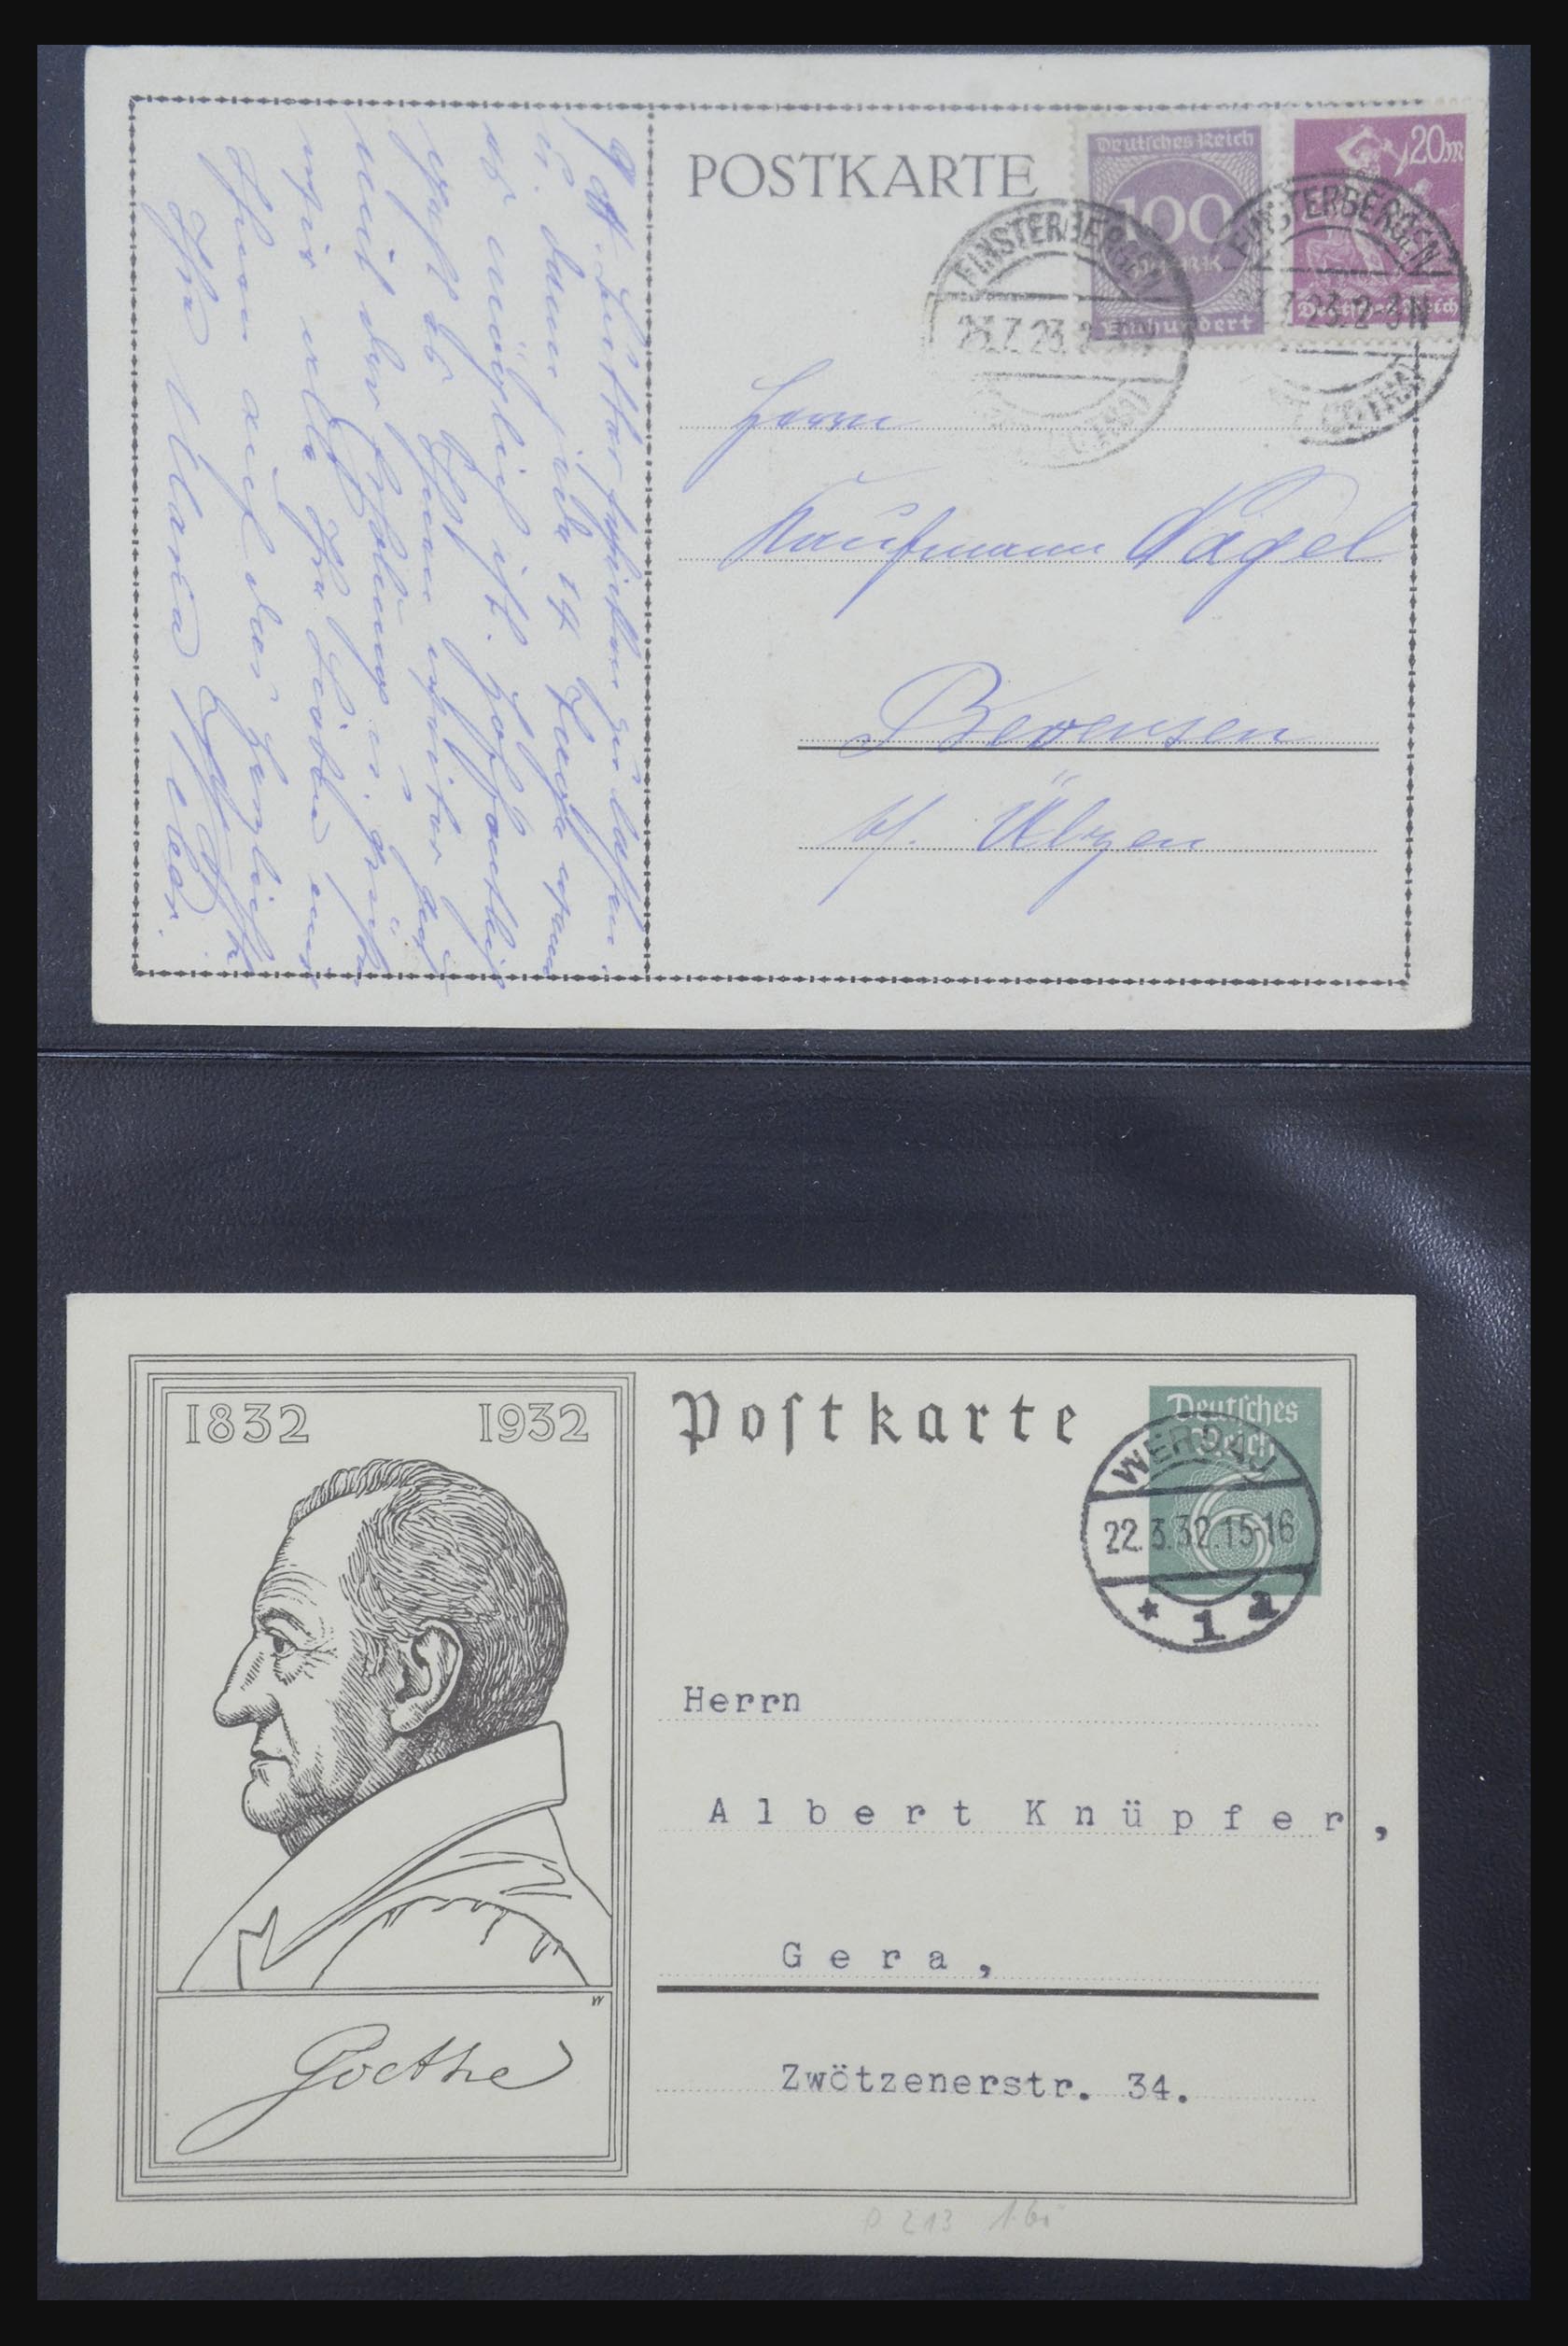 31952 440 - 31952 German Reich cards.